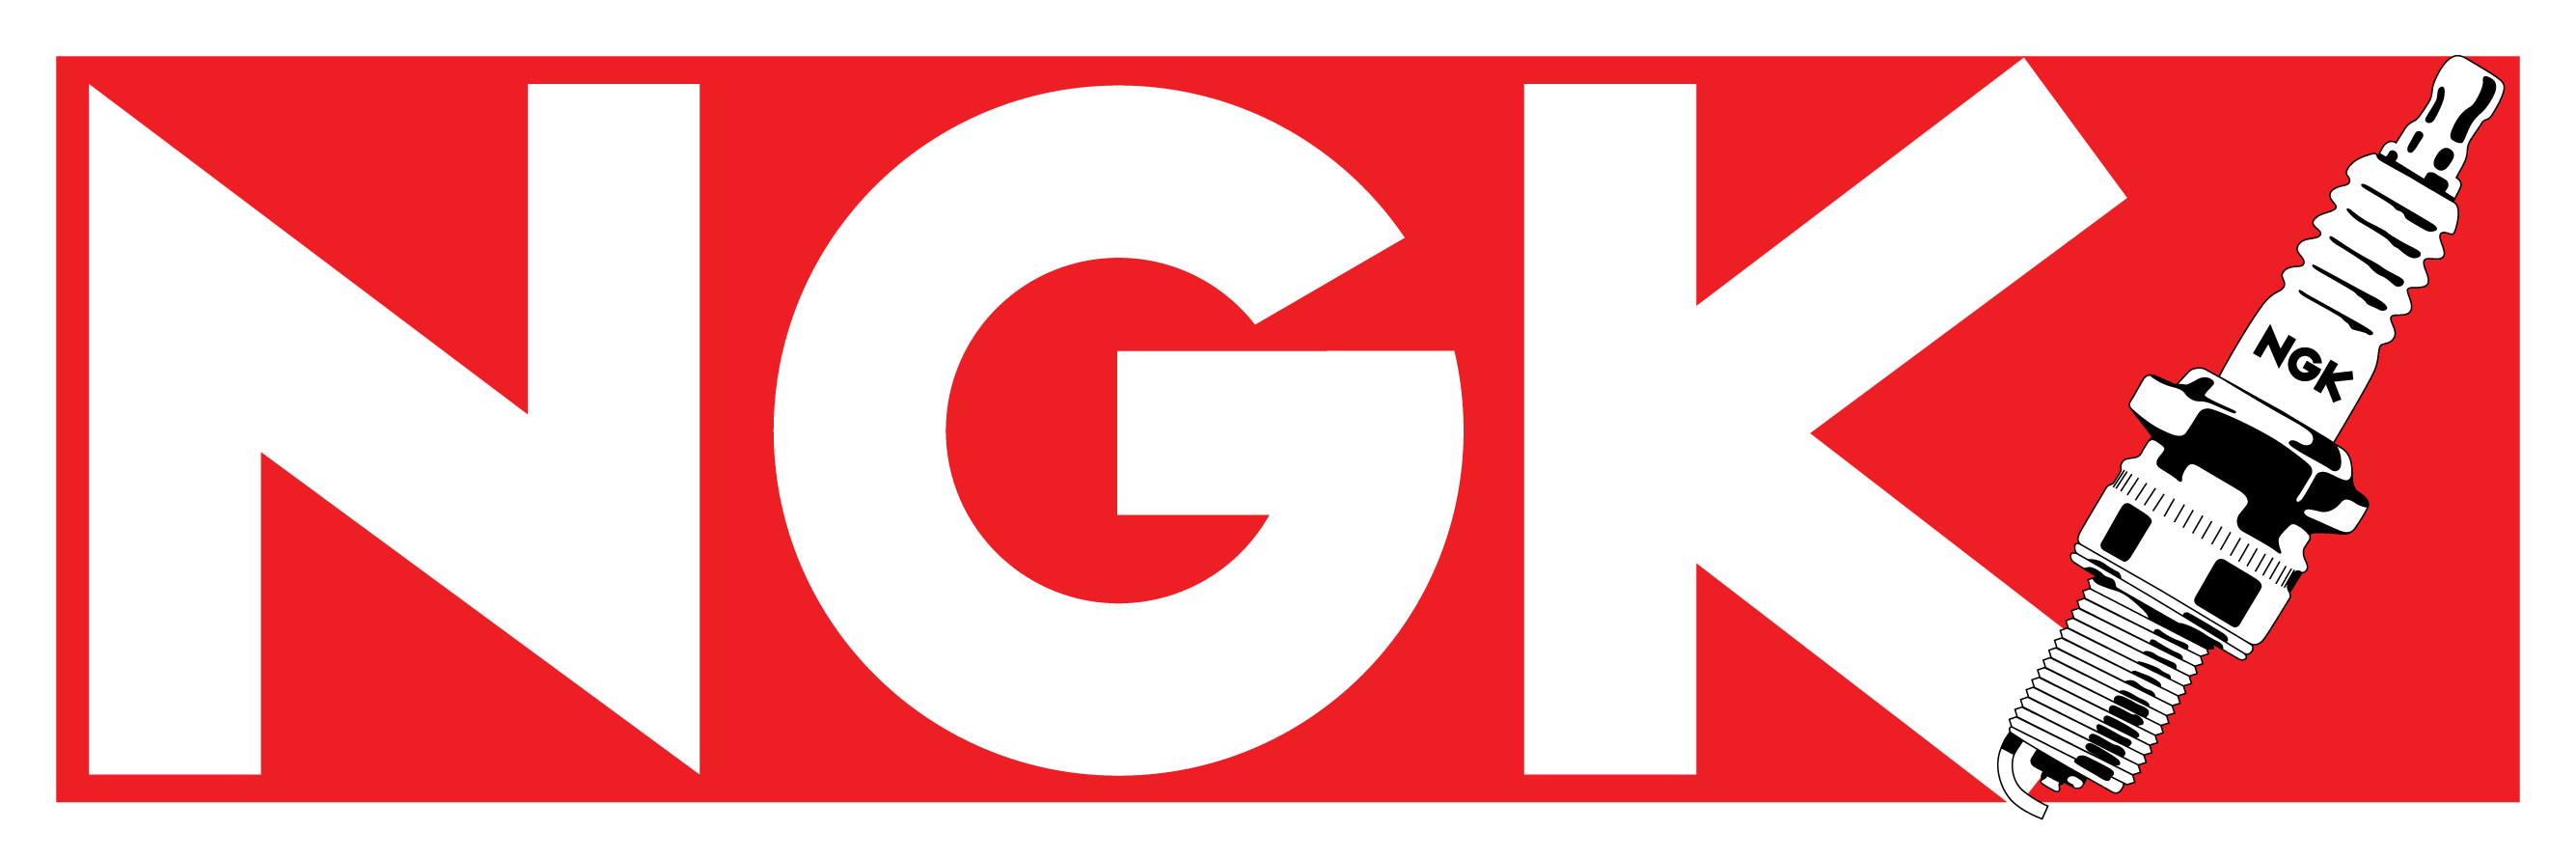 NGK Spark logo